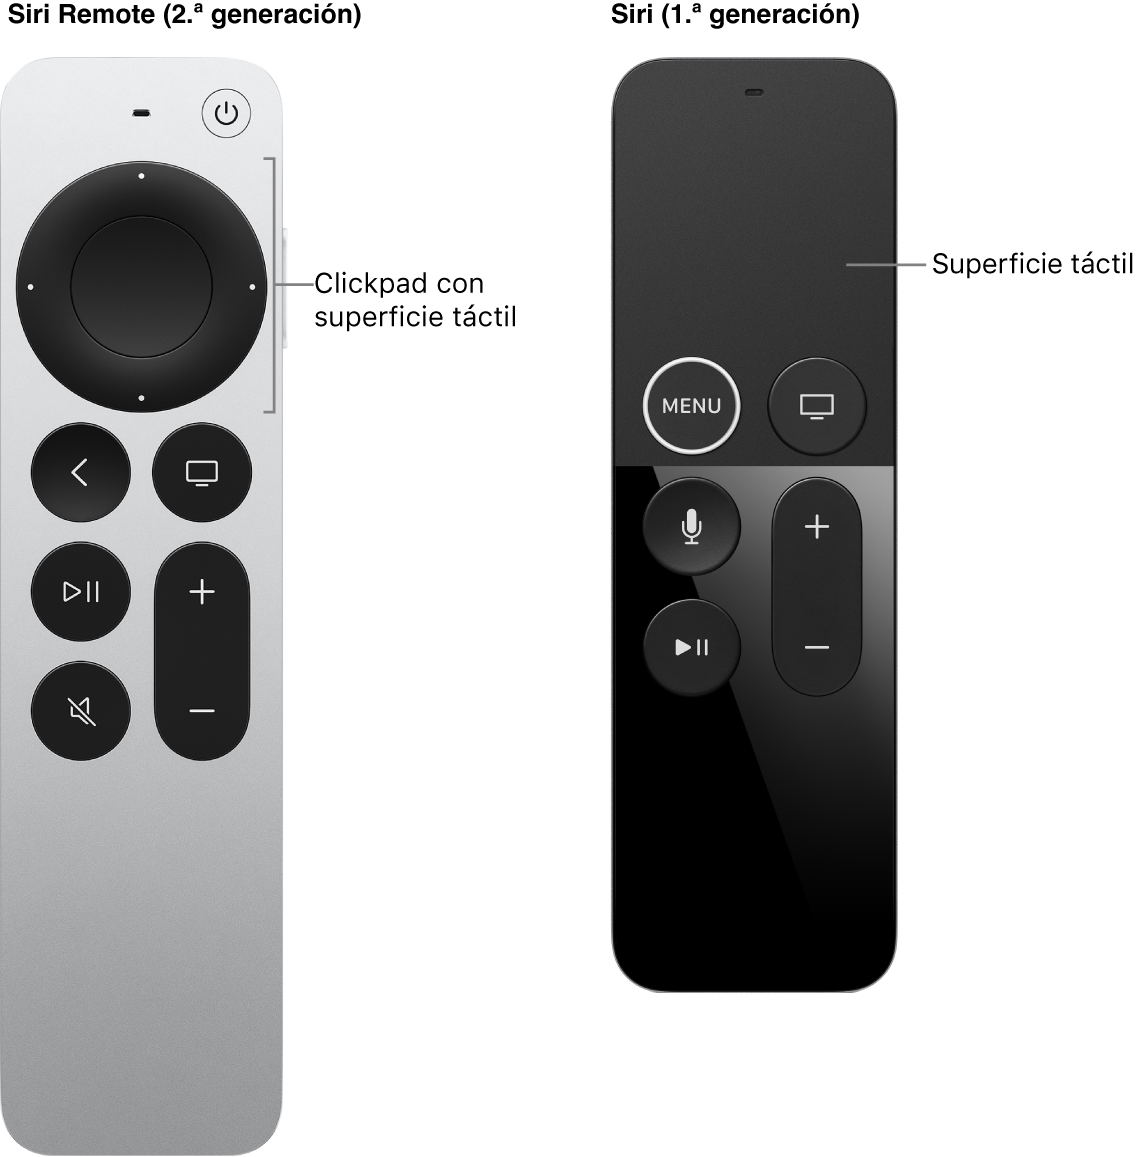 Siri Remote (2.ª generación) con clickpad y Siri Remote (1.ª generación) con superficie táctil.